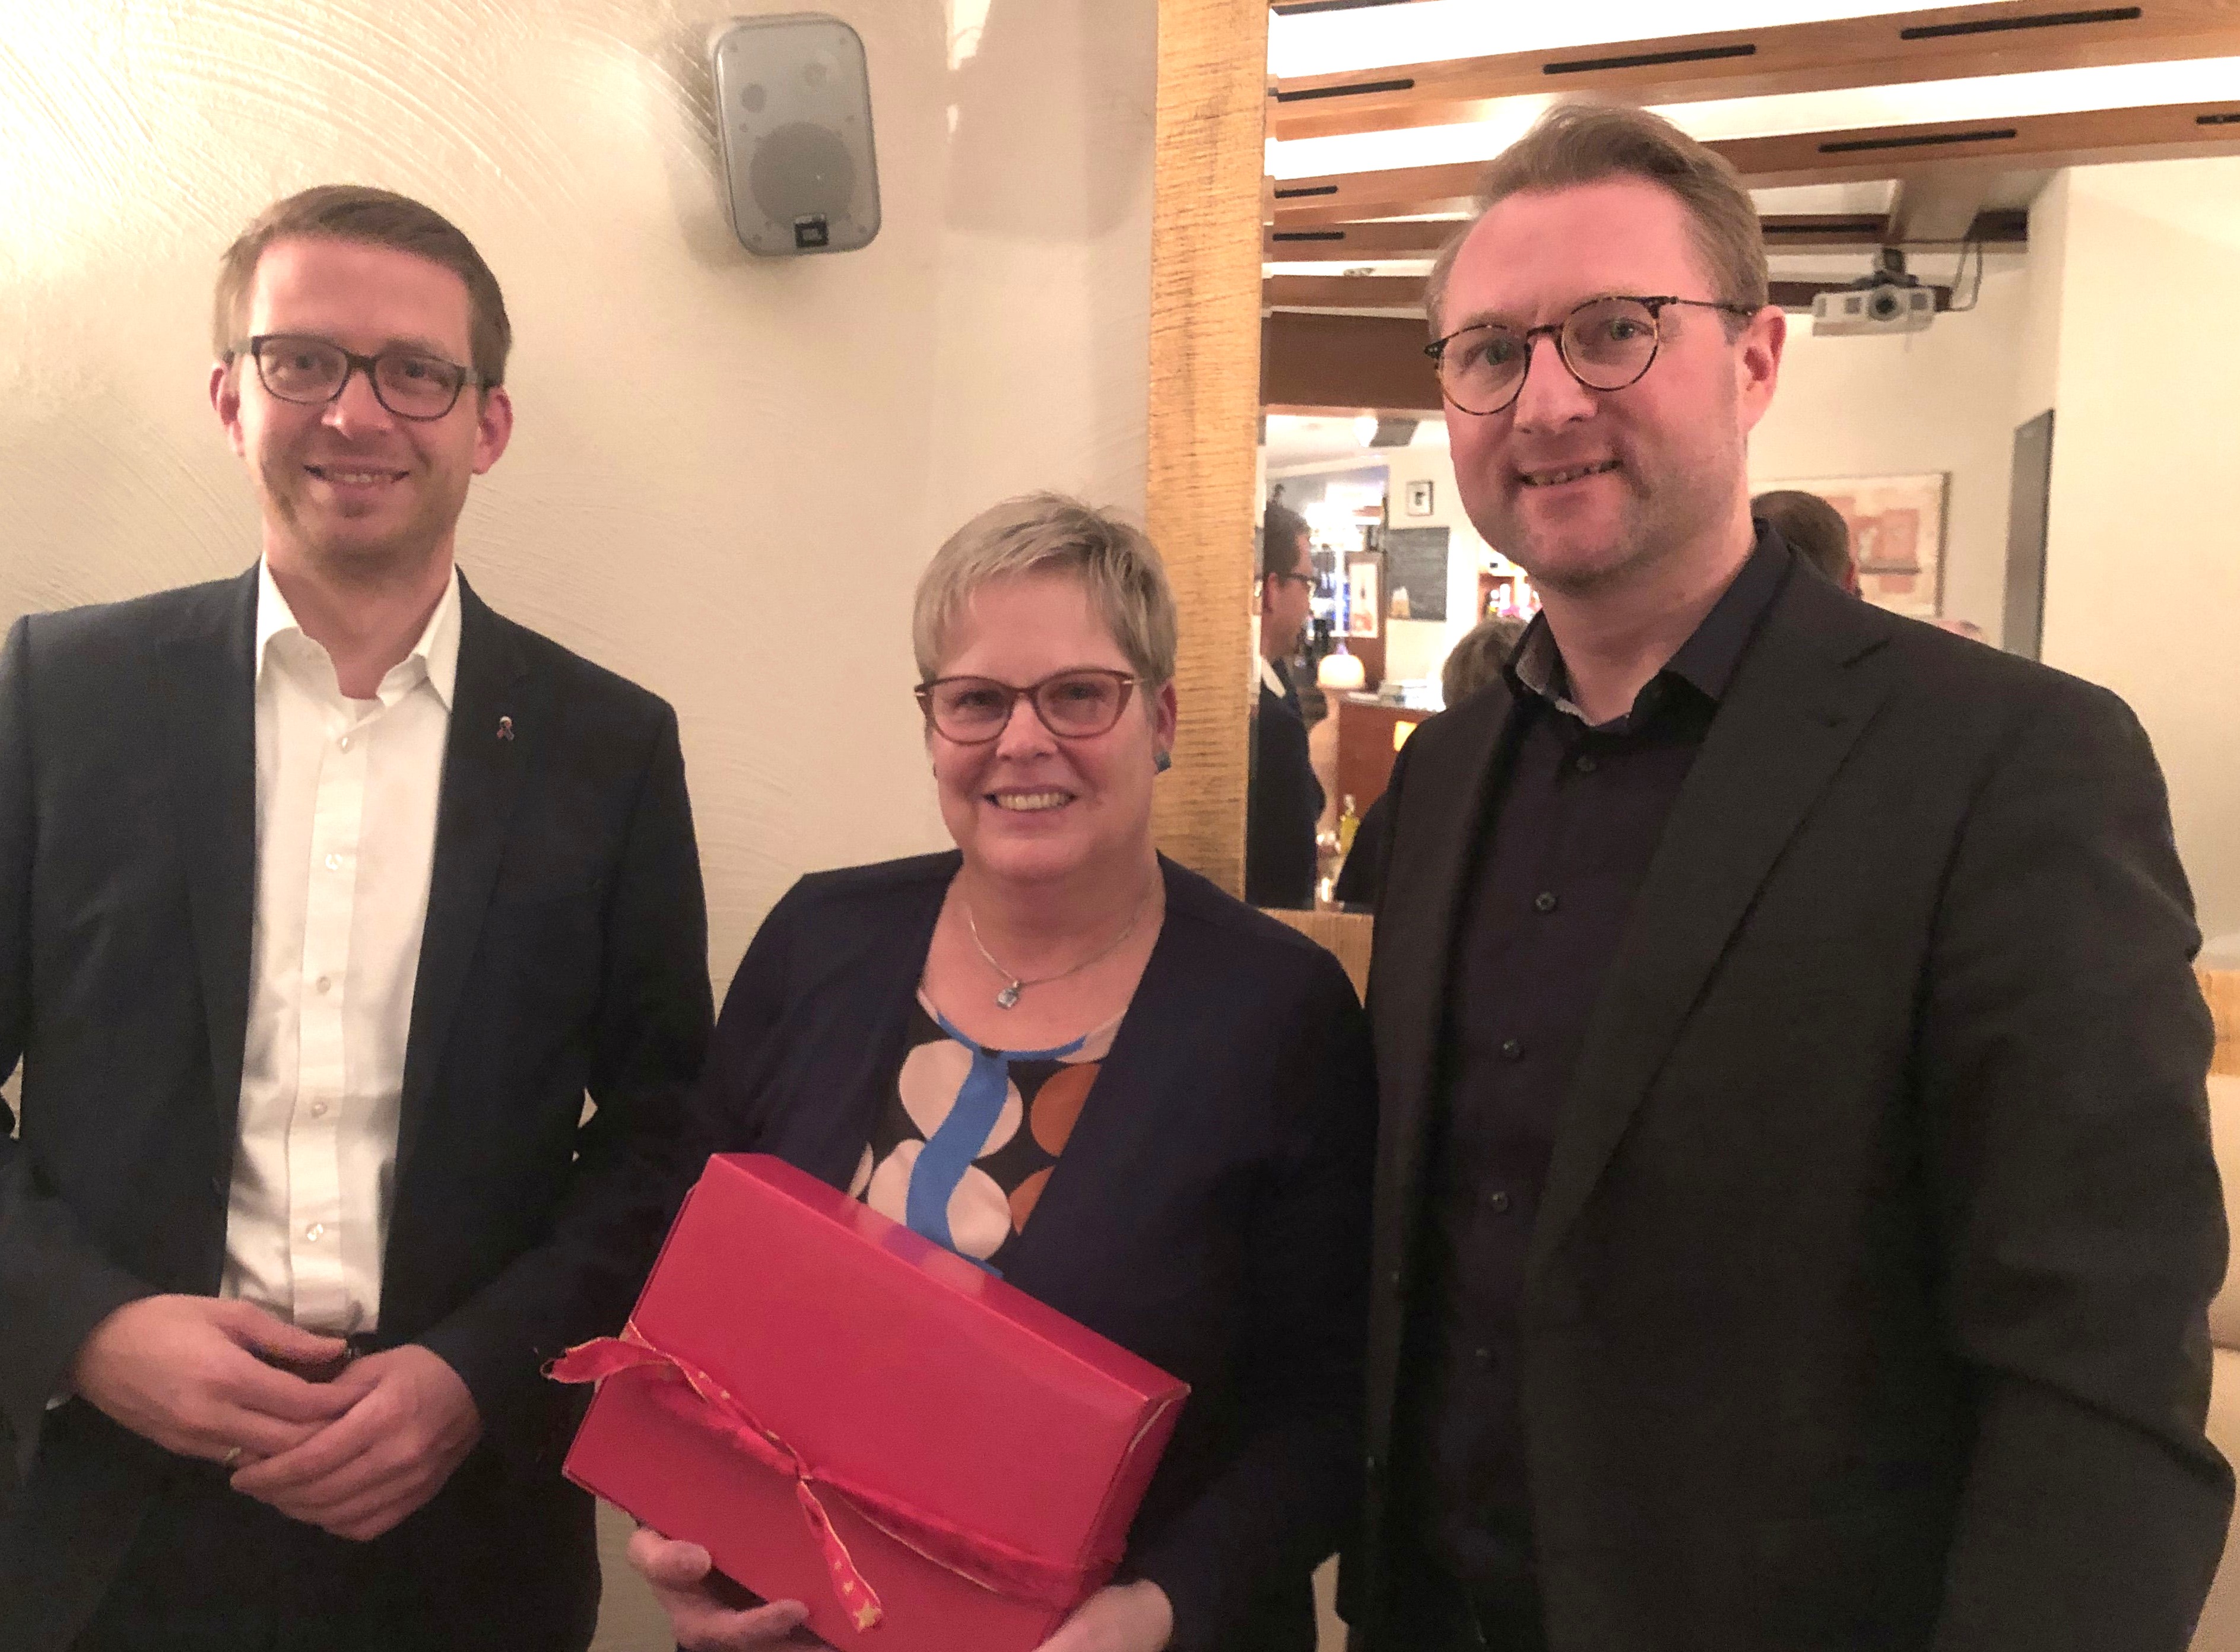  Mischak und Ruhl ehren Iris Schmidt für 20 Jahre Engagement als CDU-Kreisgeschäftsführerin